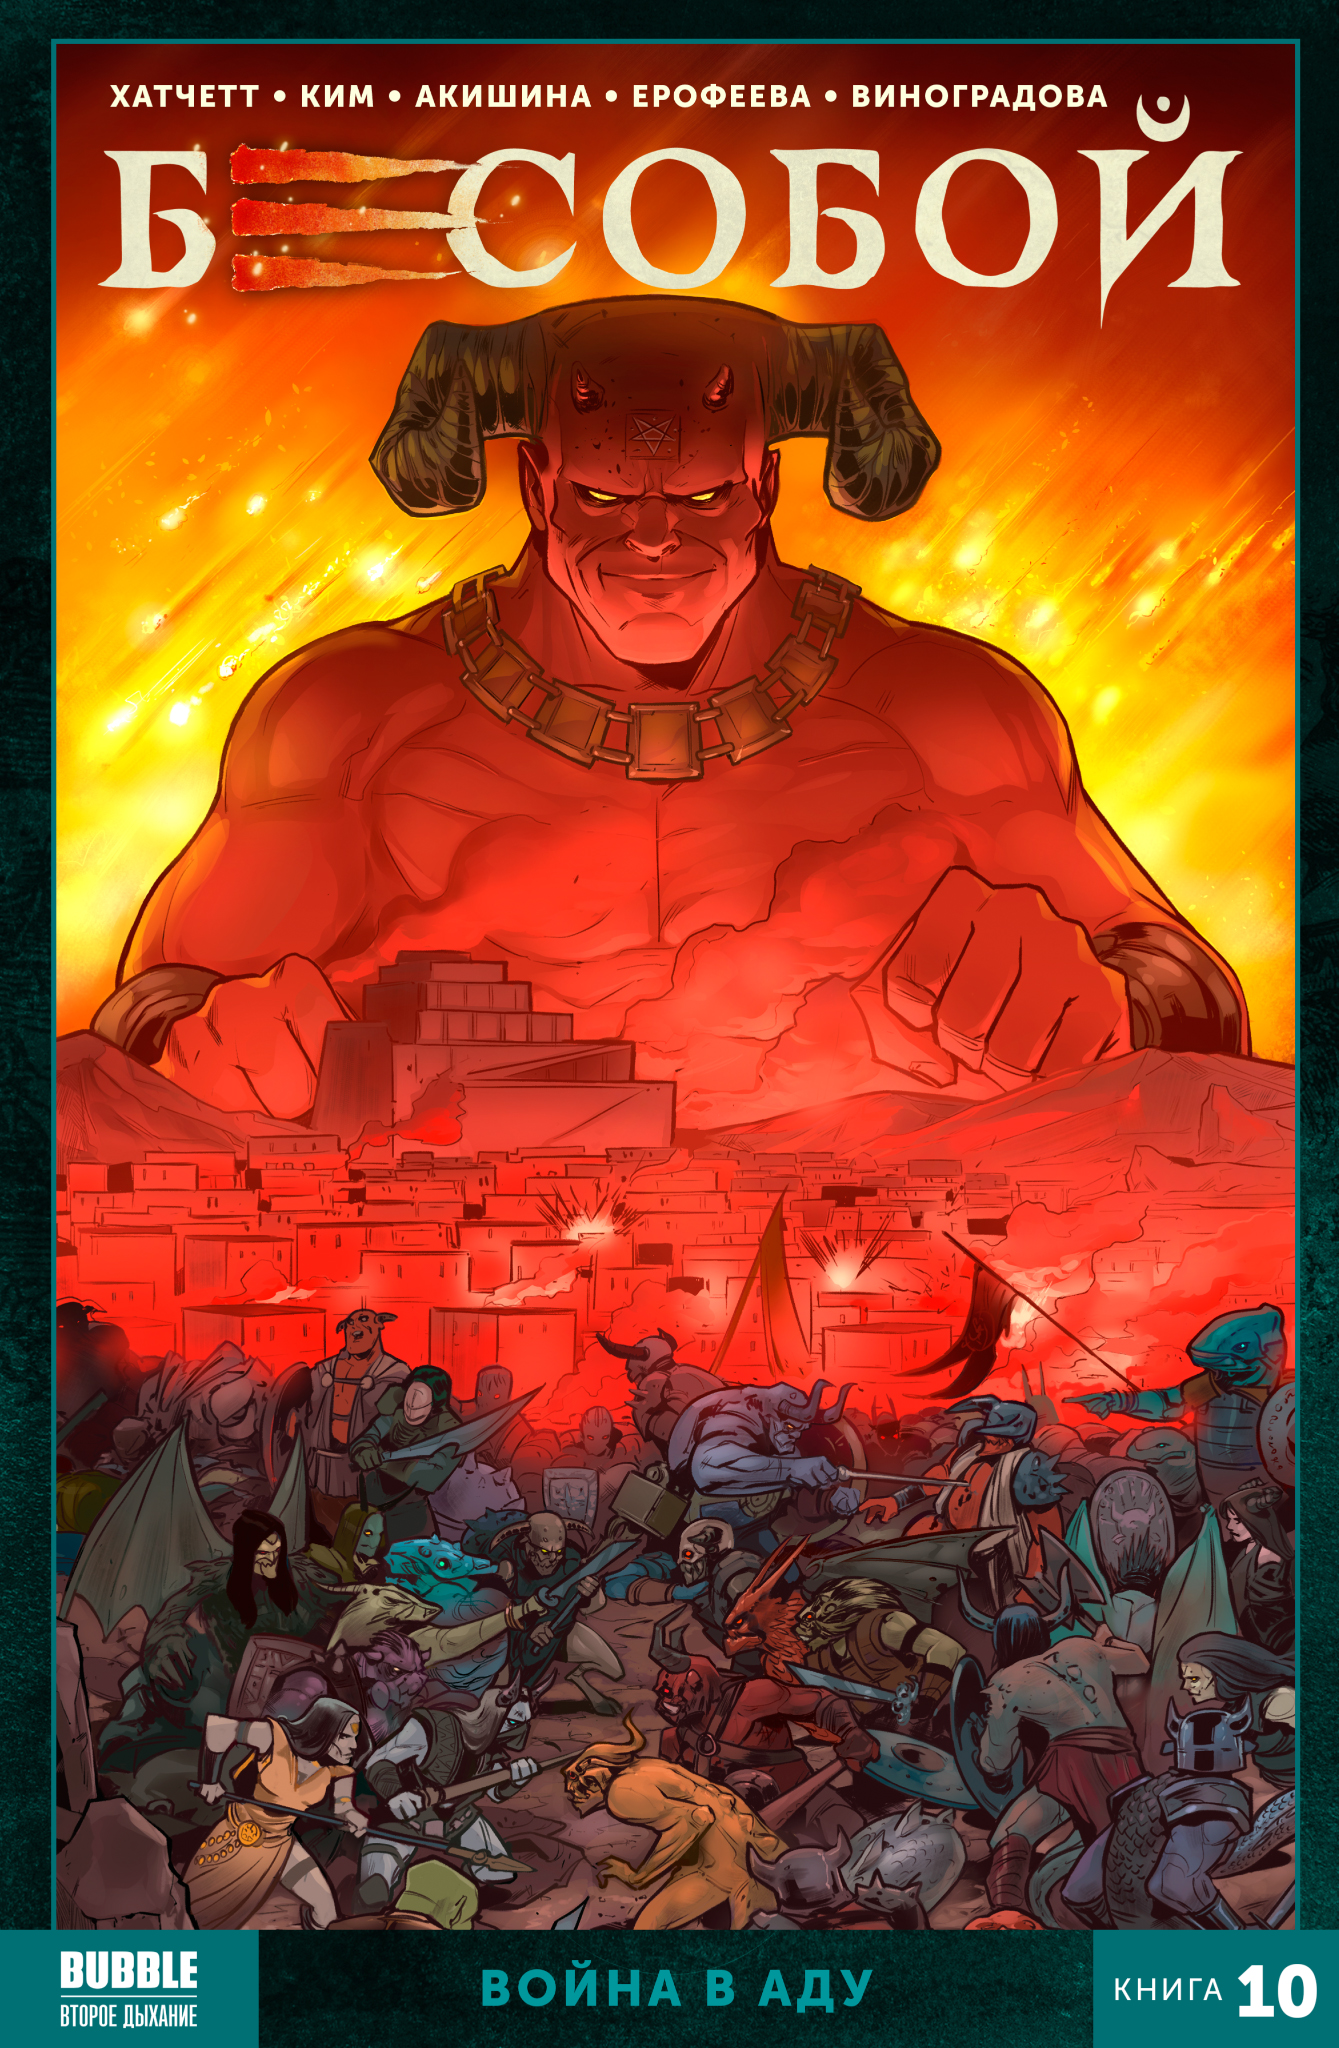 Комикс Бесобой (2021): Война в аду. Том 10 от 1С Интерес